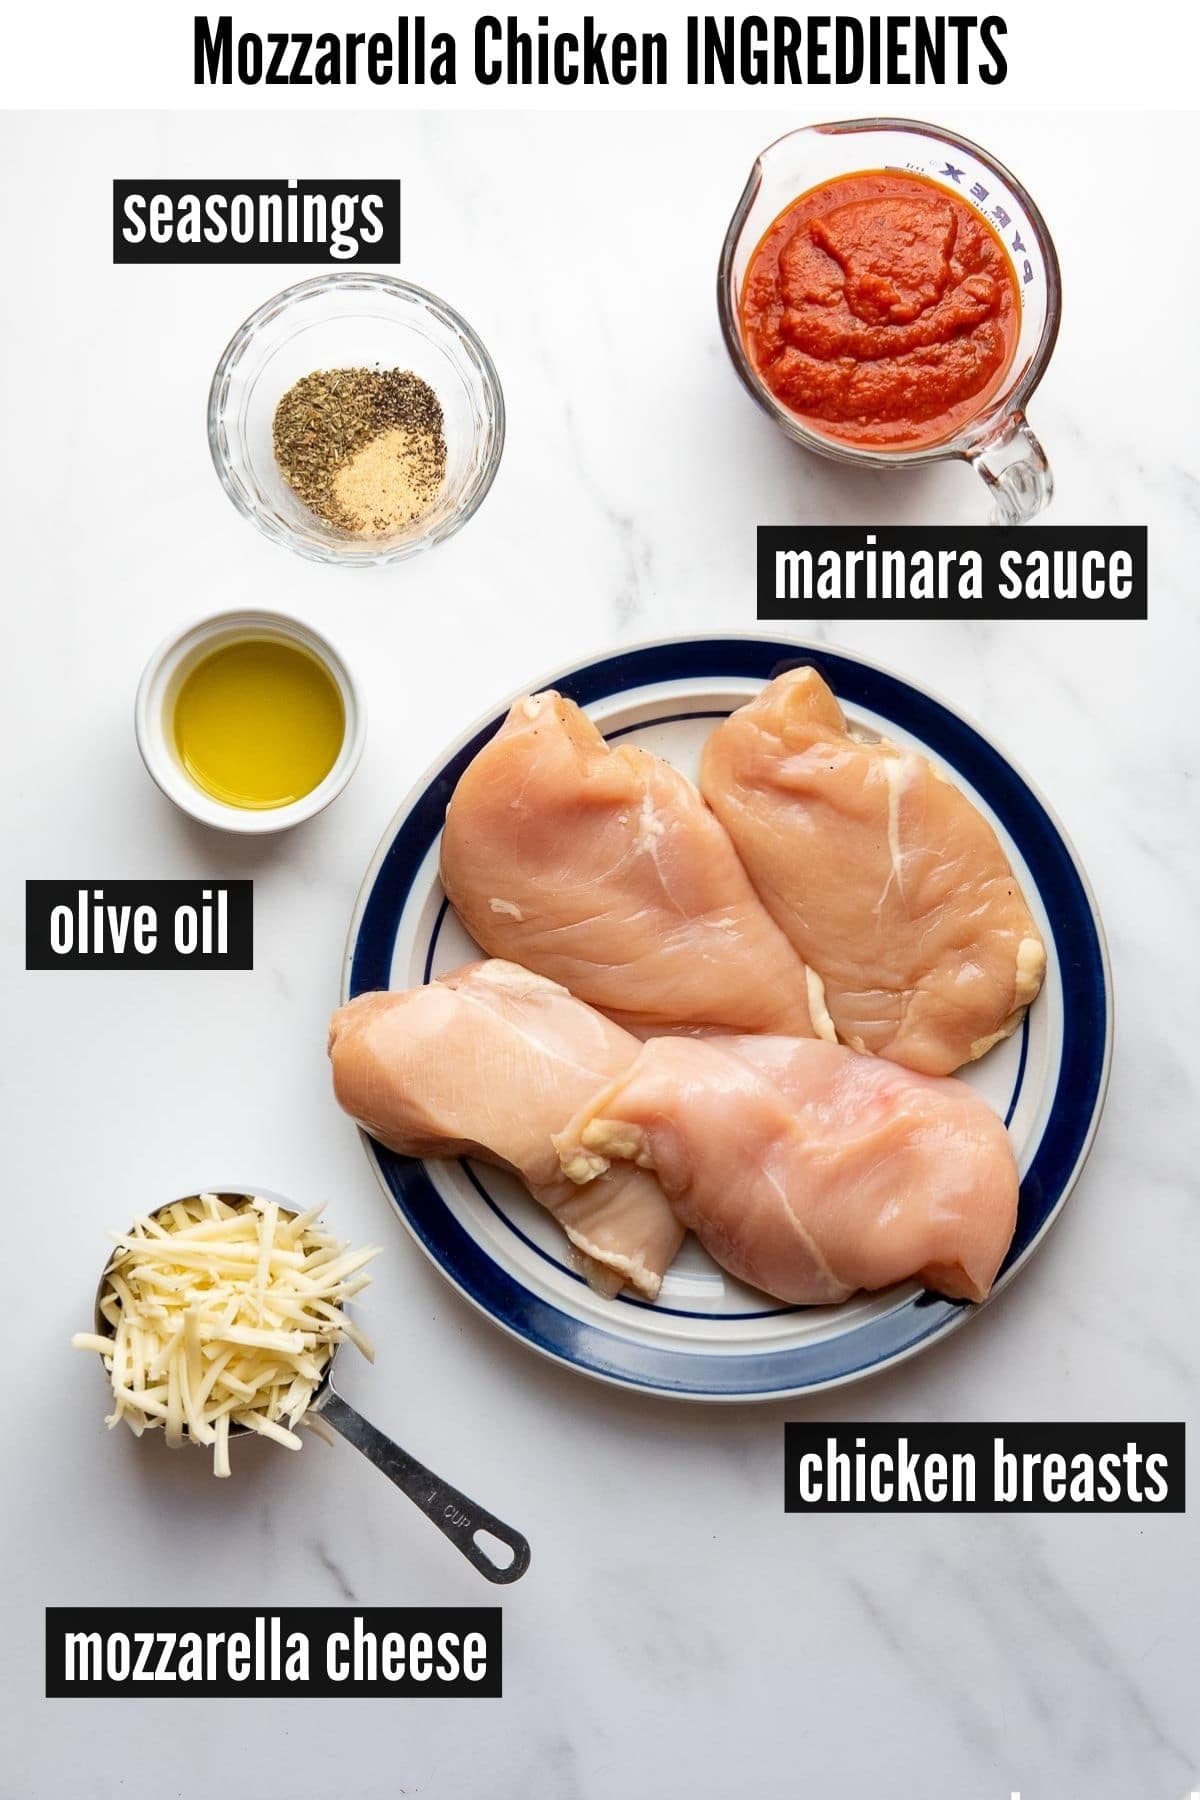 mozzarella chicken ingredients